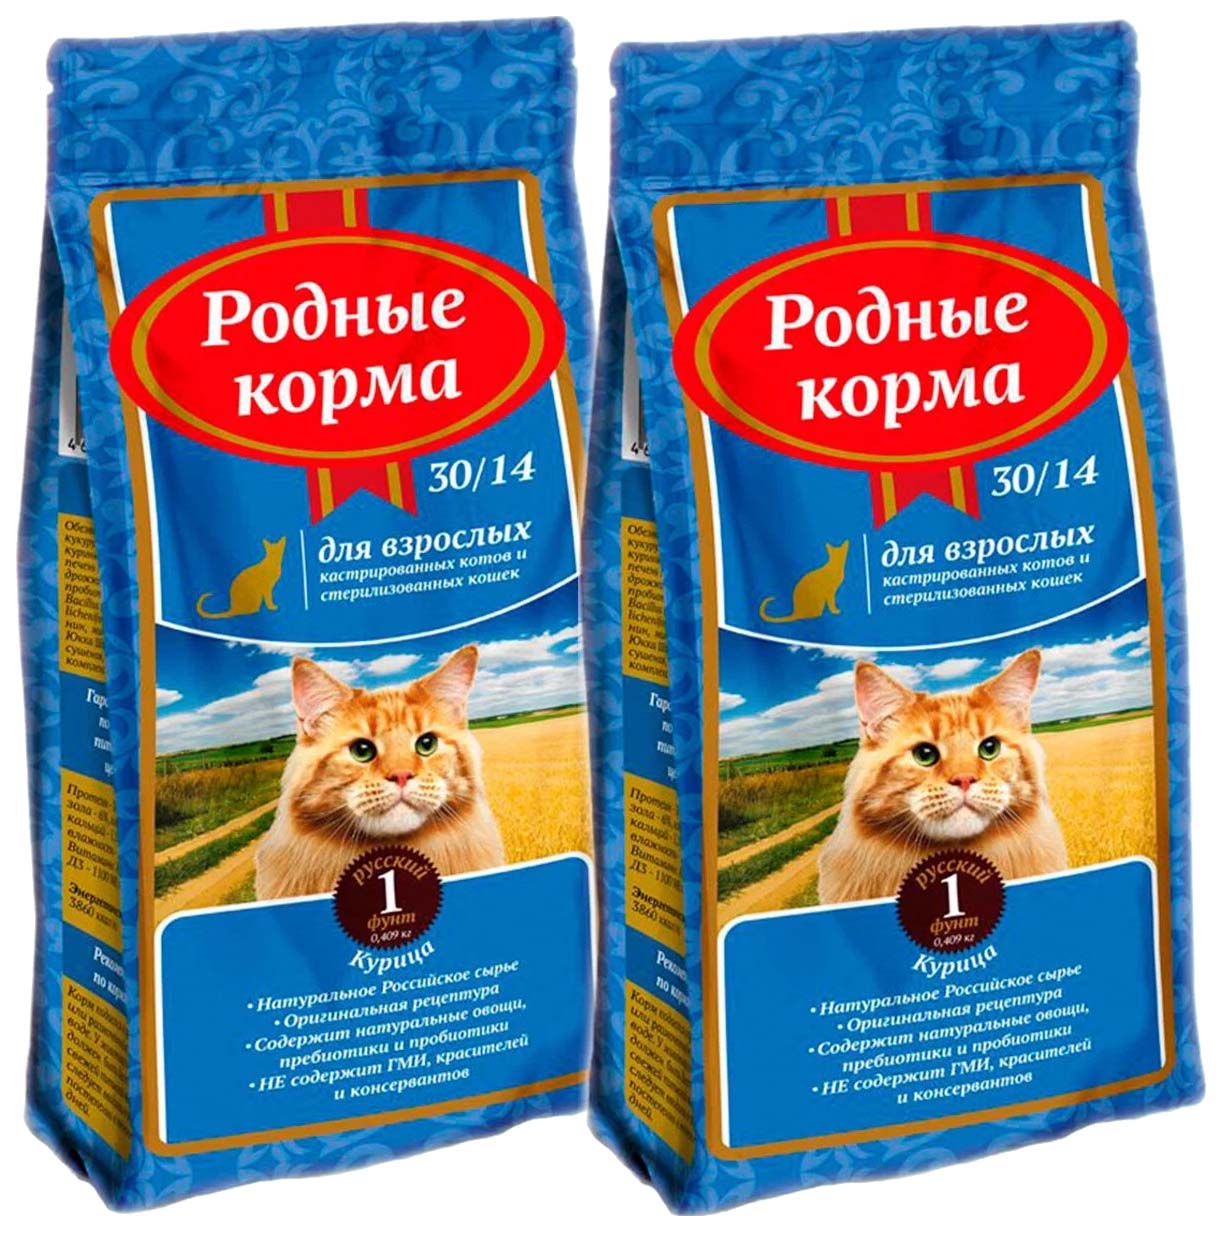 Сухой корм для кошек Родные корма, для стерилизованных, 2 шт по 0,409 кг